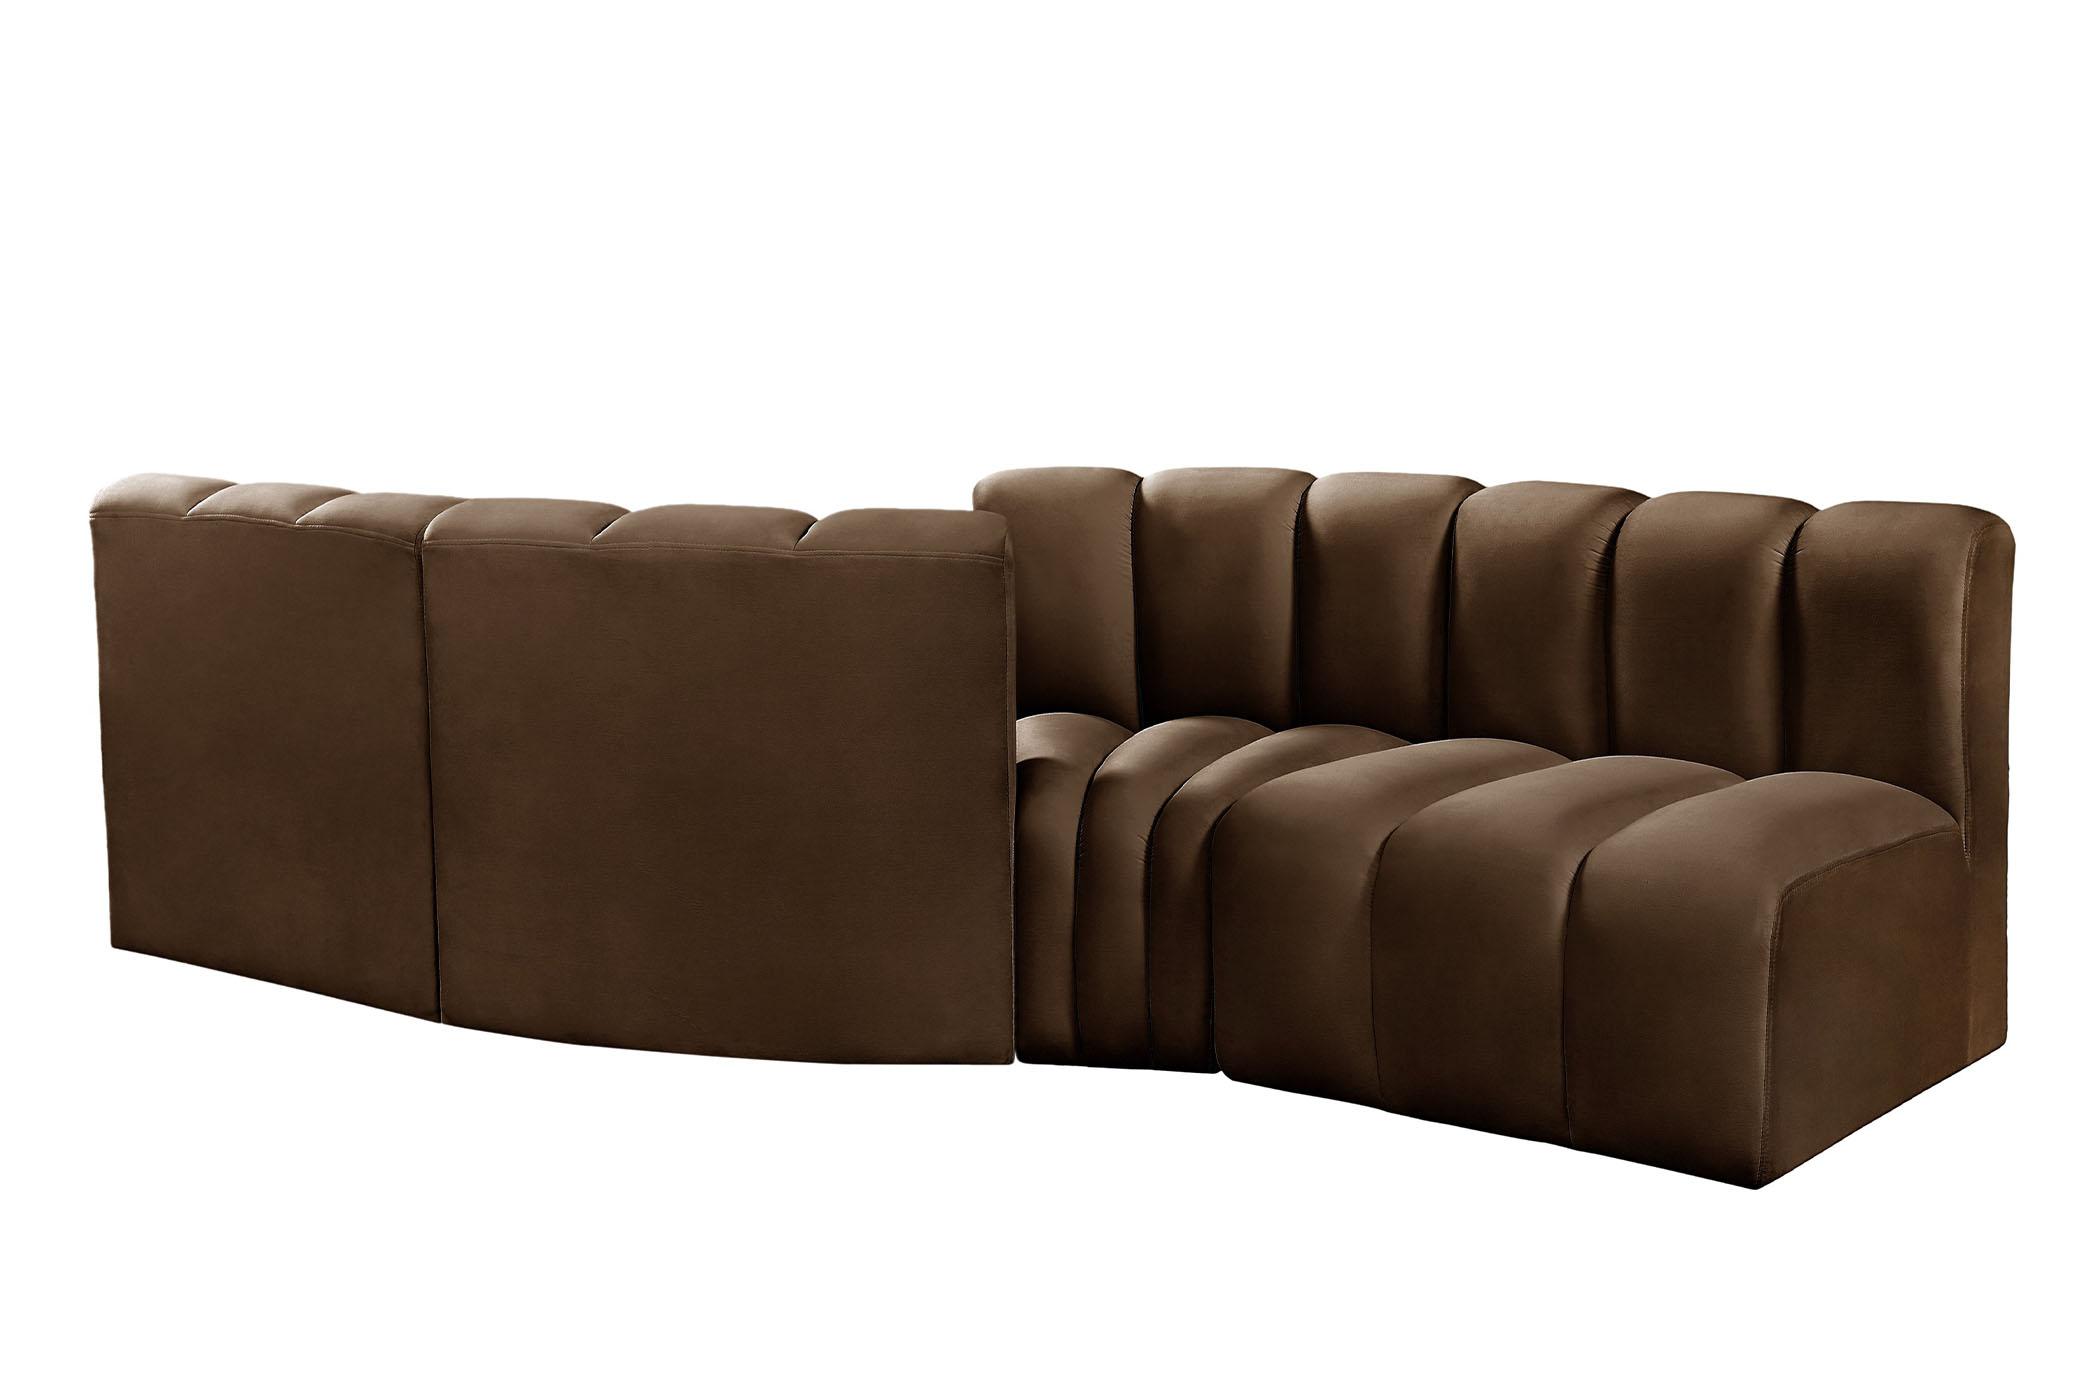 

    
103Brown-S4A Meridian Furniture Modular Sectional Sofa
